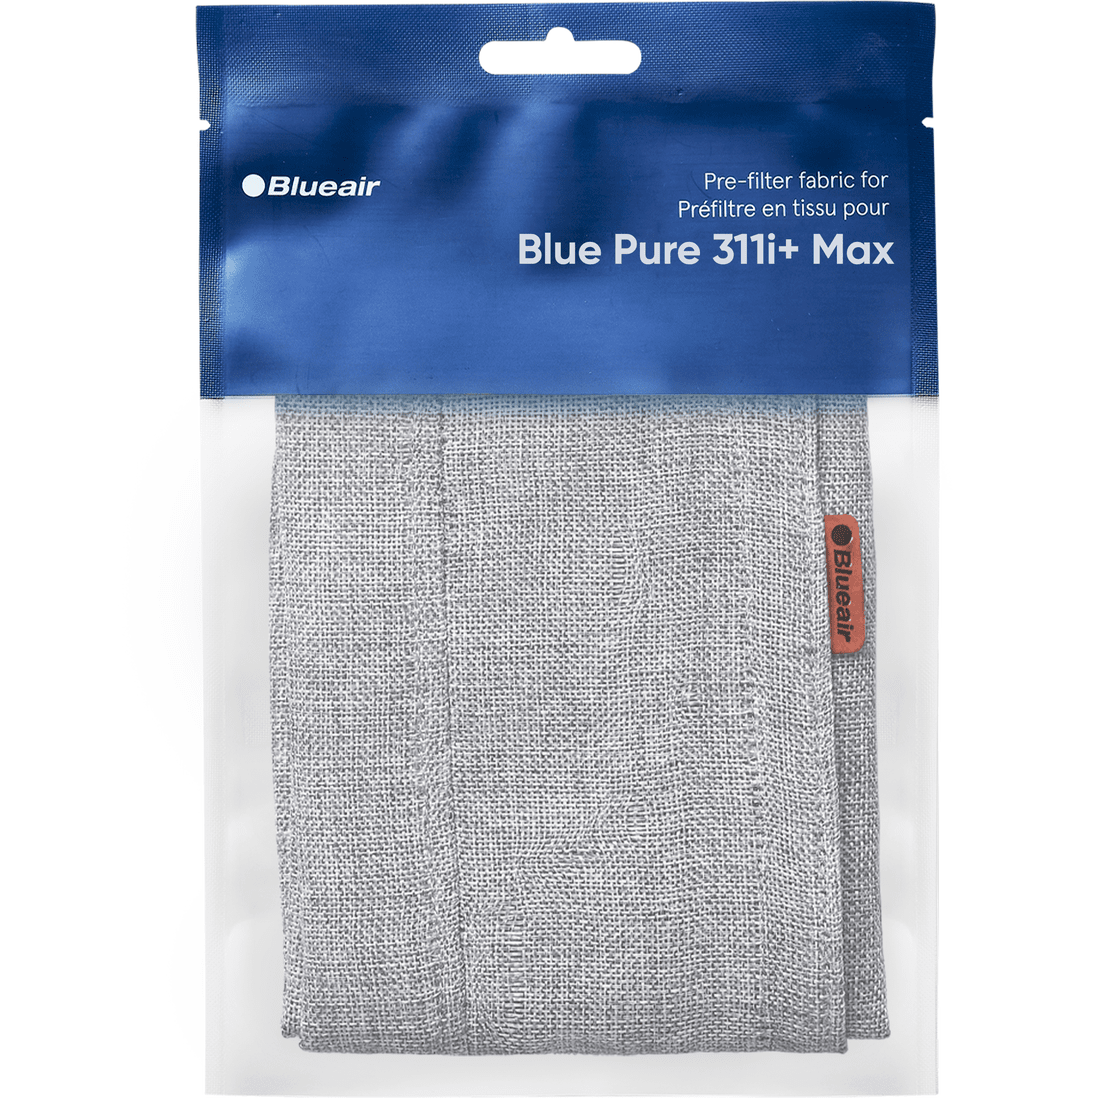 Blueair Blue Pure 311i+ Max Pre-Filter - Fog